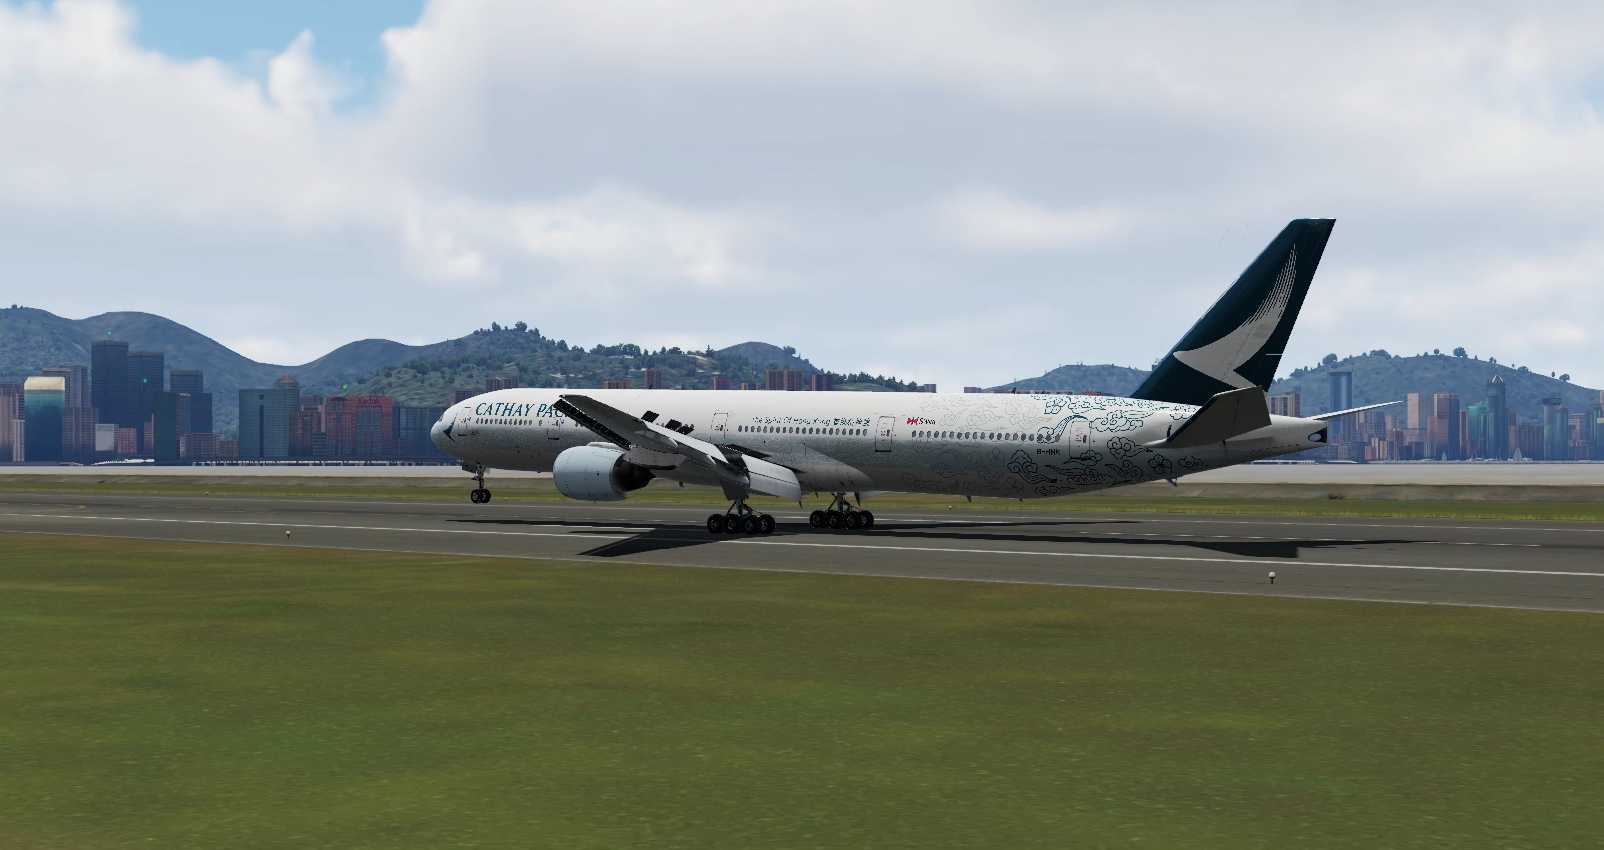 Prepar3Dv5 国泰航空777-300大横风降落香港启德国际机场-7484 